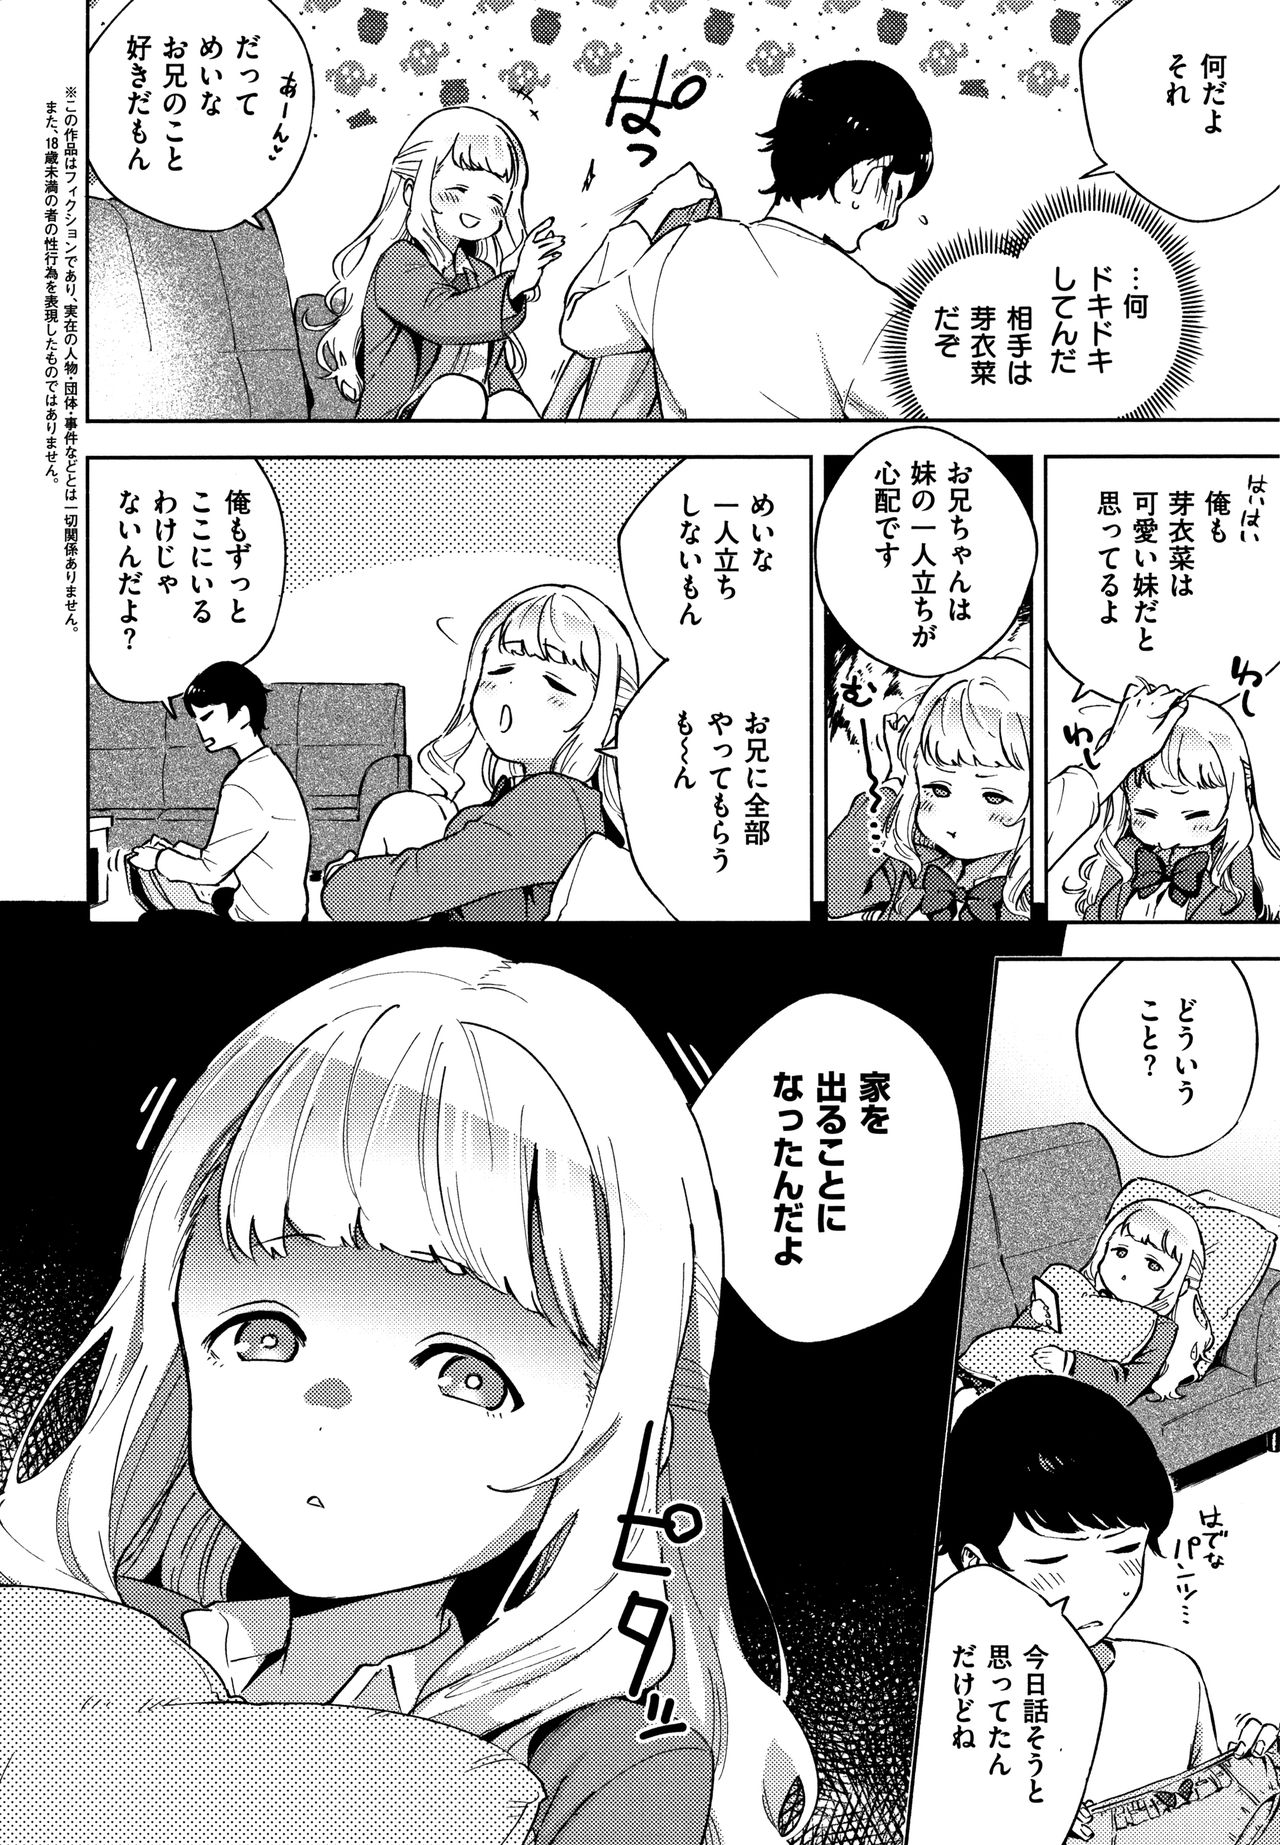 [Herio] YaMiTsuKi Pheromone page 9 full